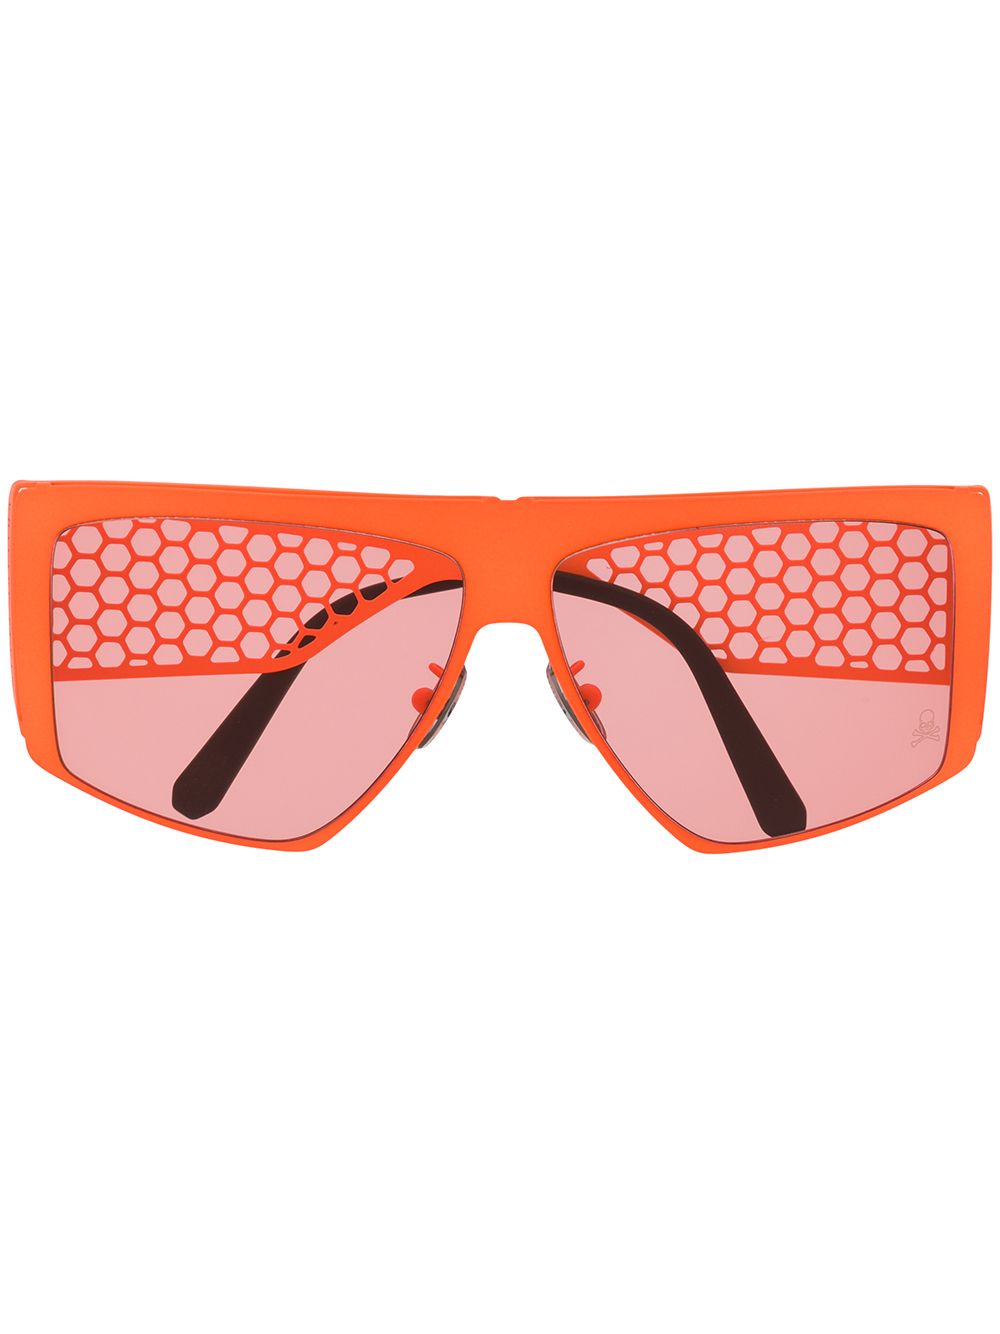 фото Philipp plein солнцезащитные очки с сетчатыми дужками